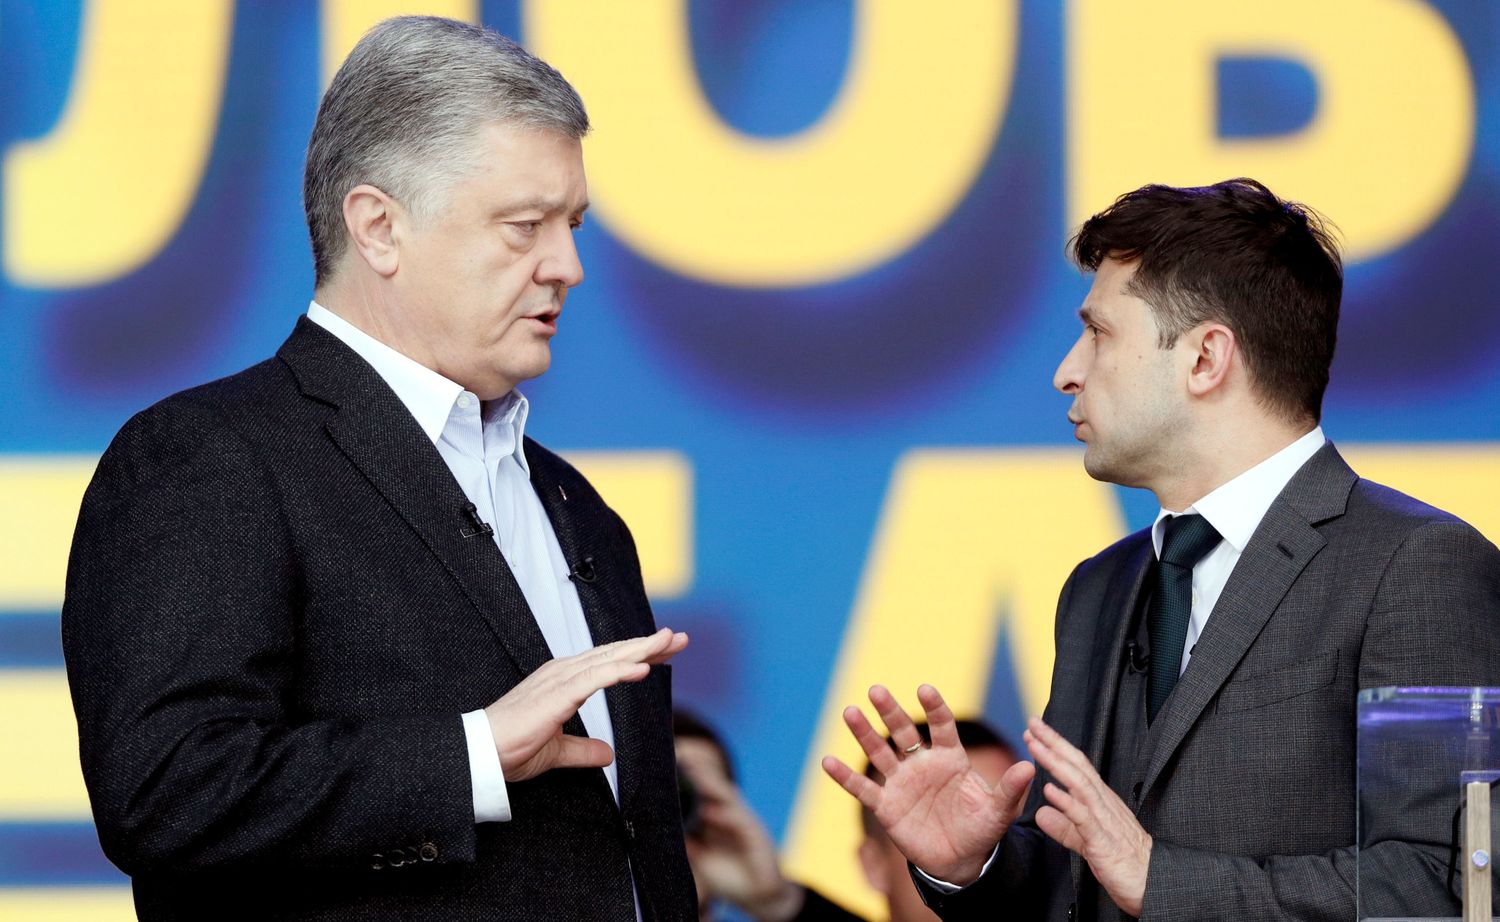 Юнкер: не вижу разницы между Порошенко и Зеленским, если речь идет о РФ